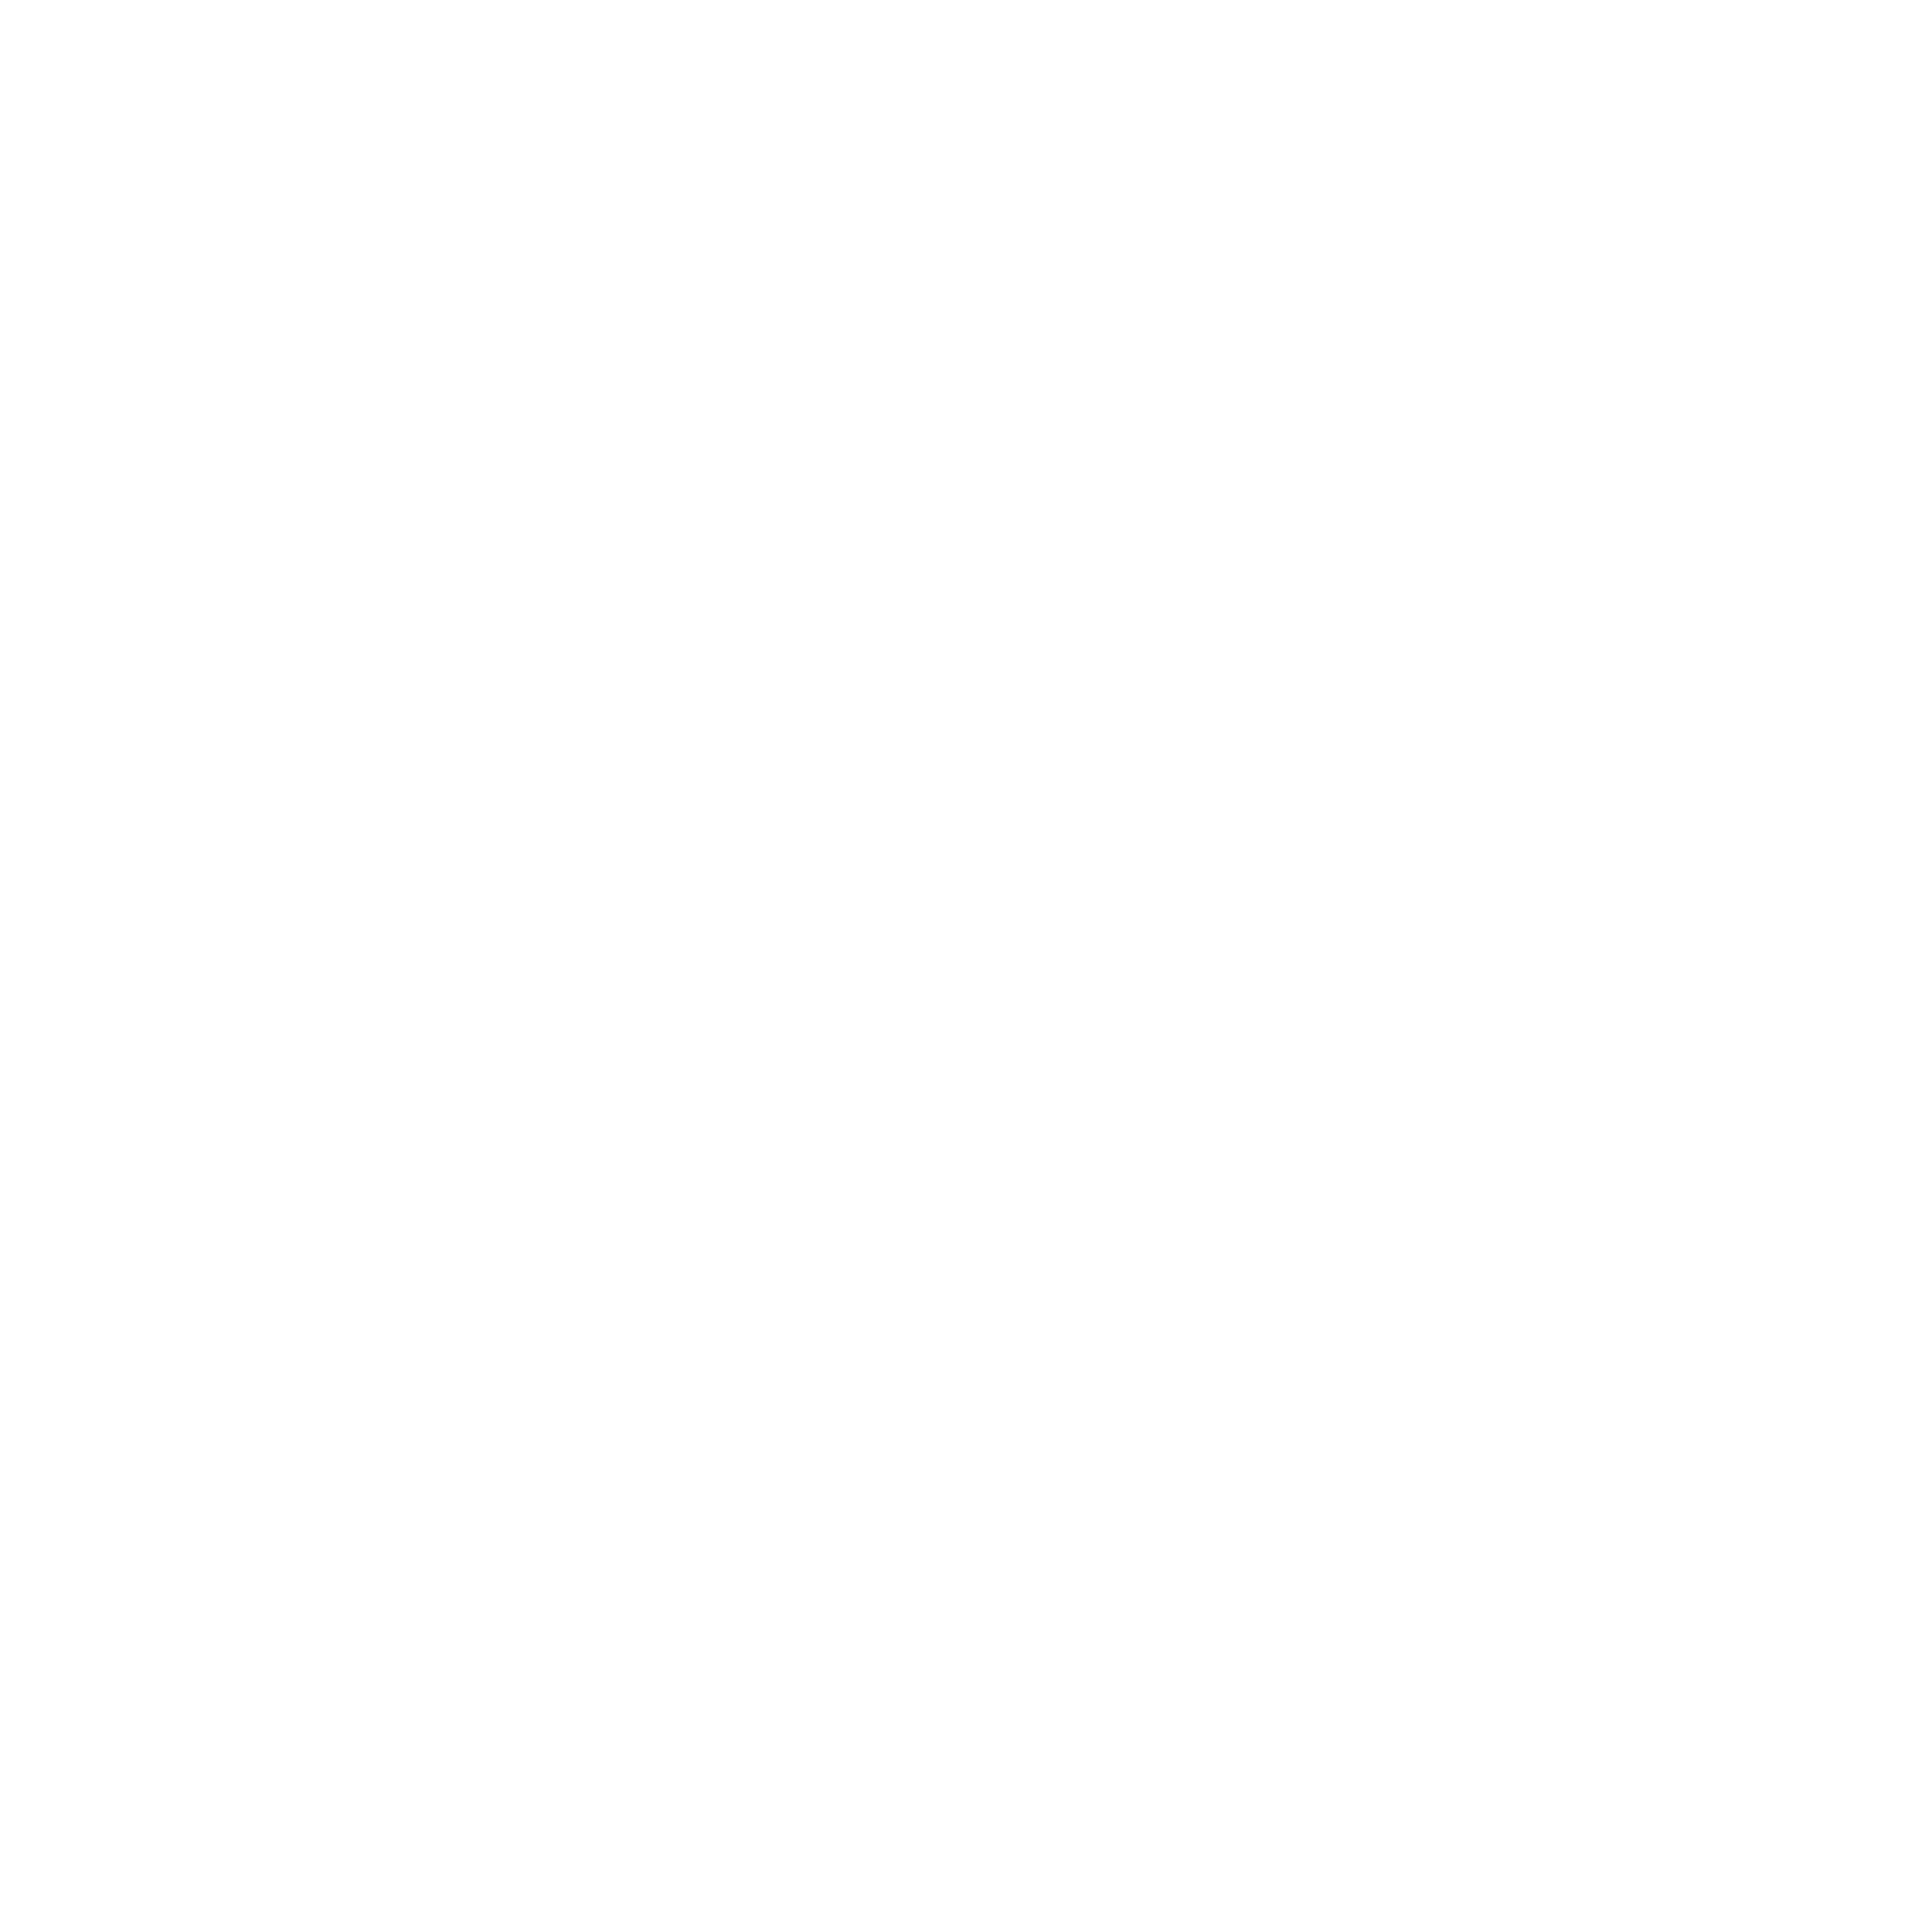 Hama sushi